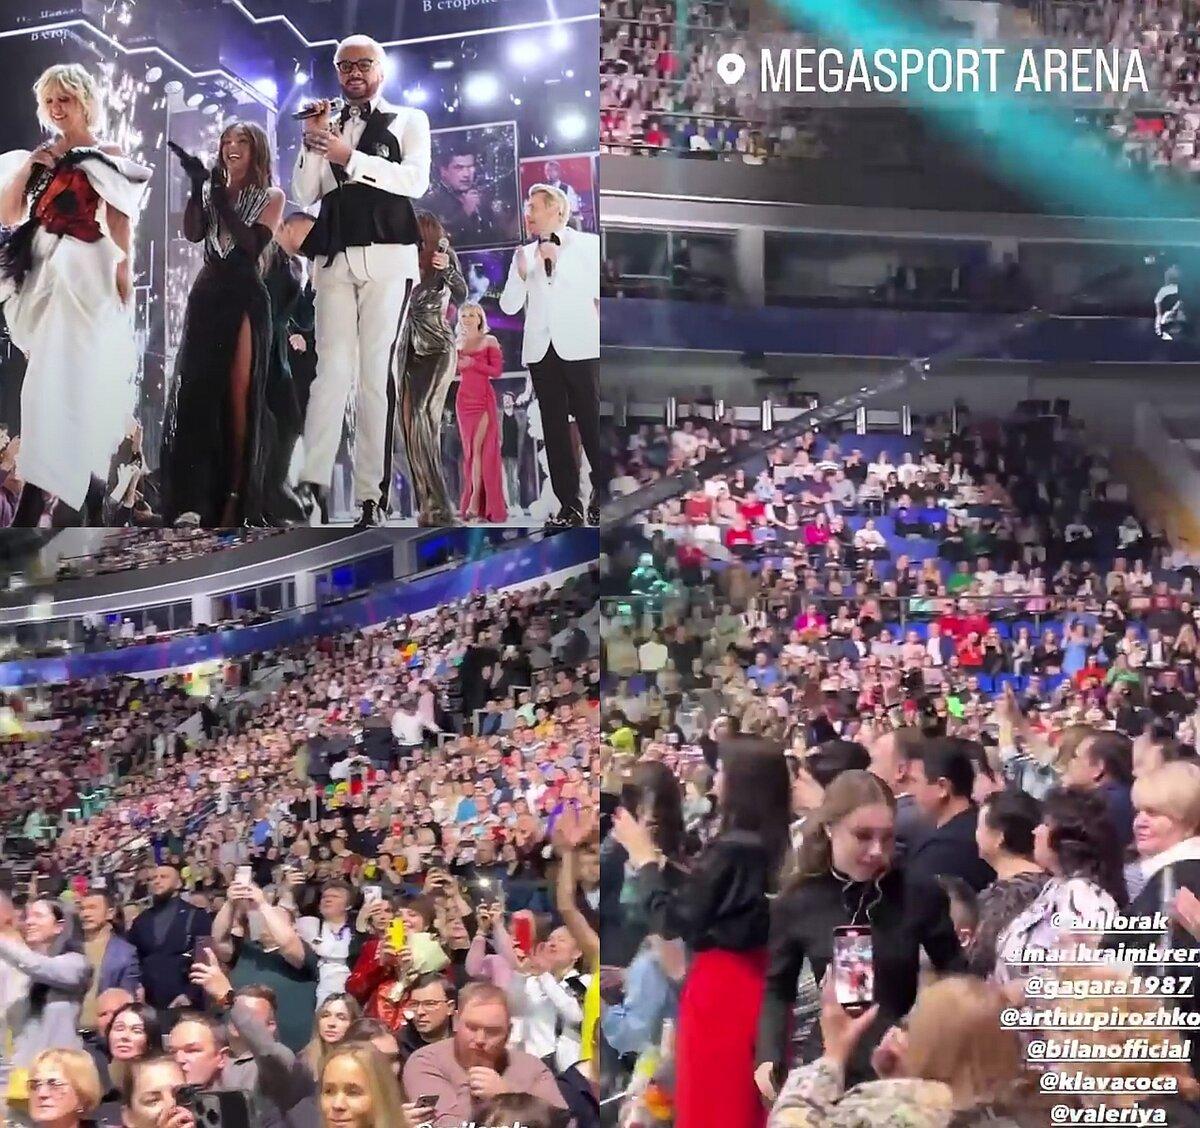 2 декабря на арене "Мегаспорт" в Москве состоялось ежегодное вручение премии "Песня года". Организаторы обещали незабываемое шоу, в котором приняли участие более 50 ведущих артистов.-6